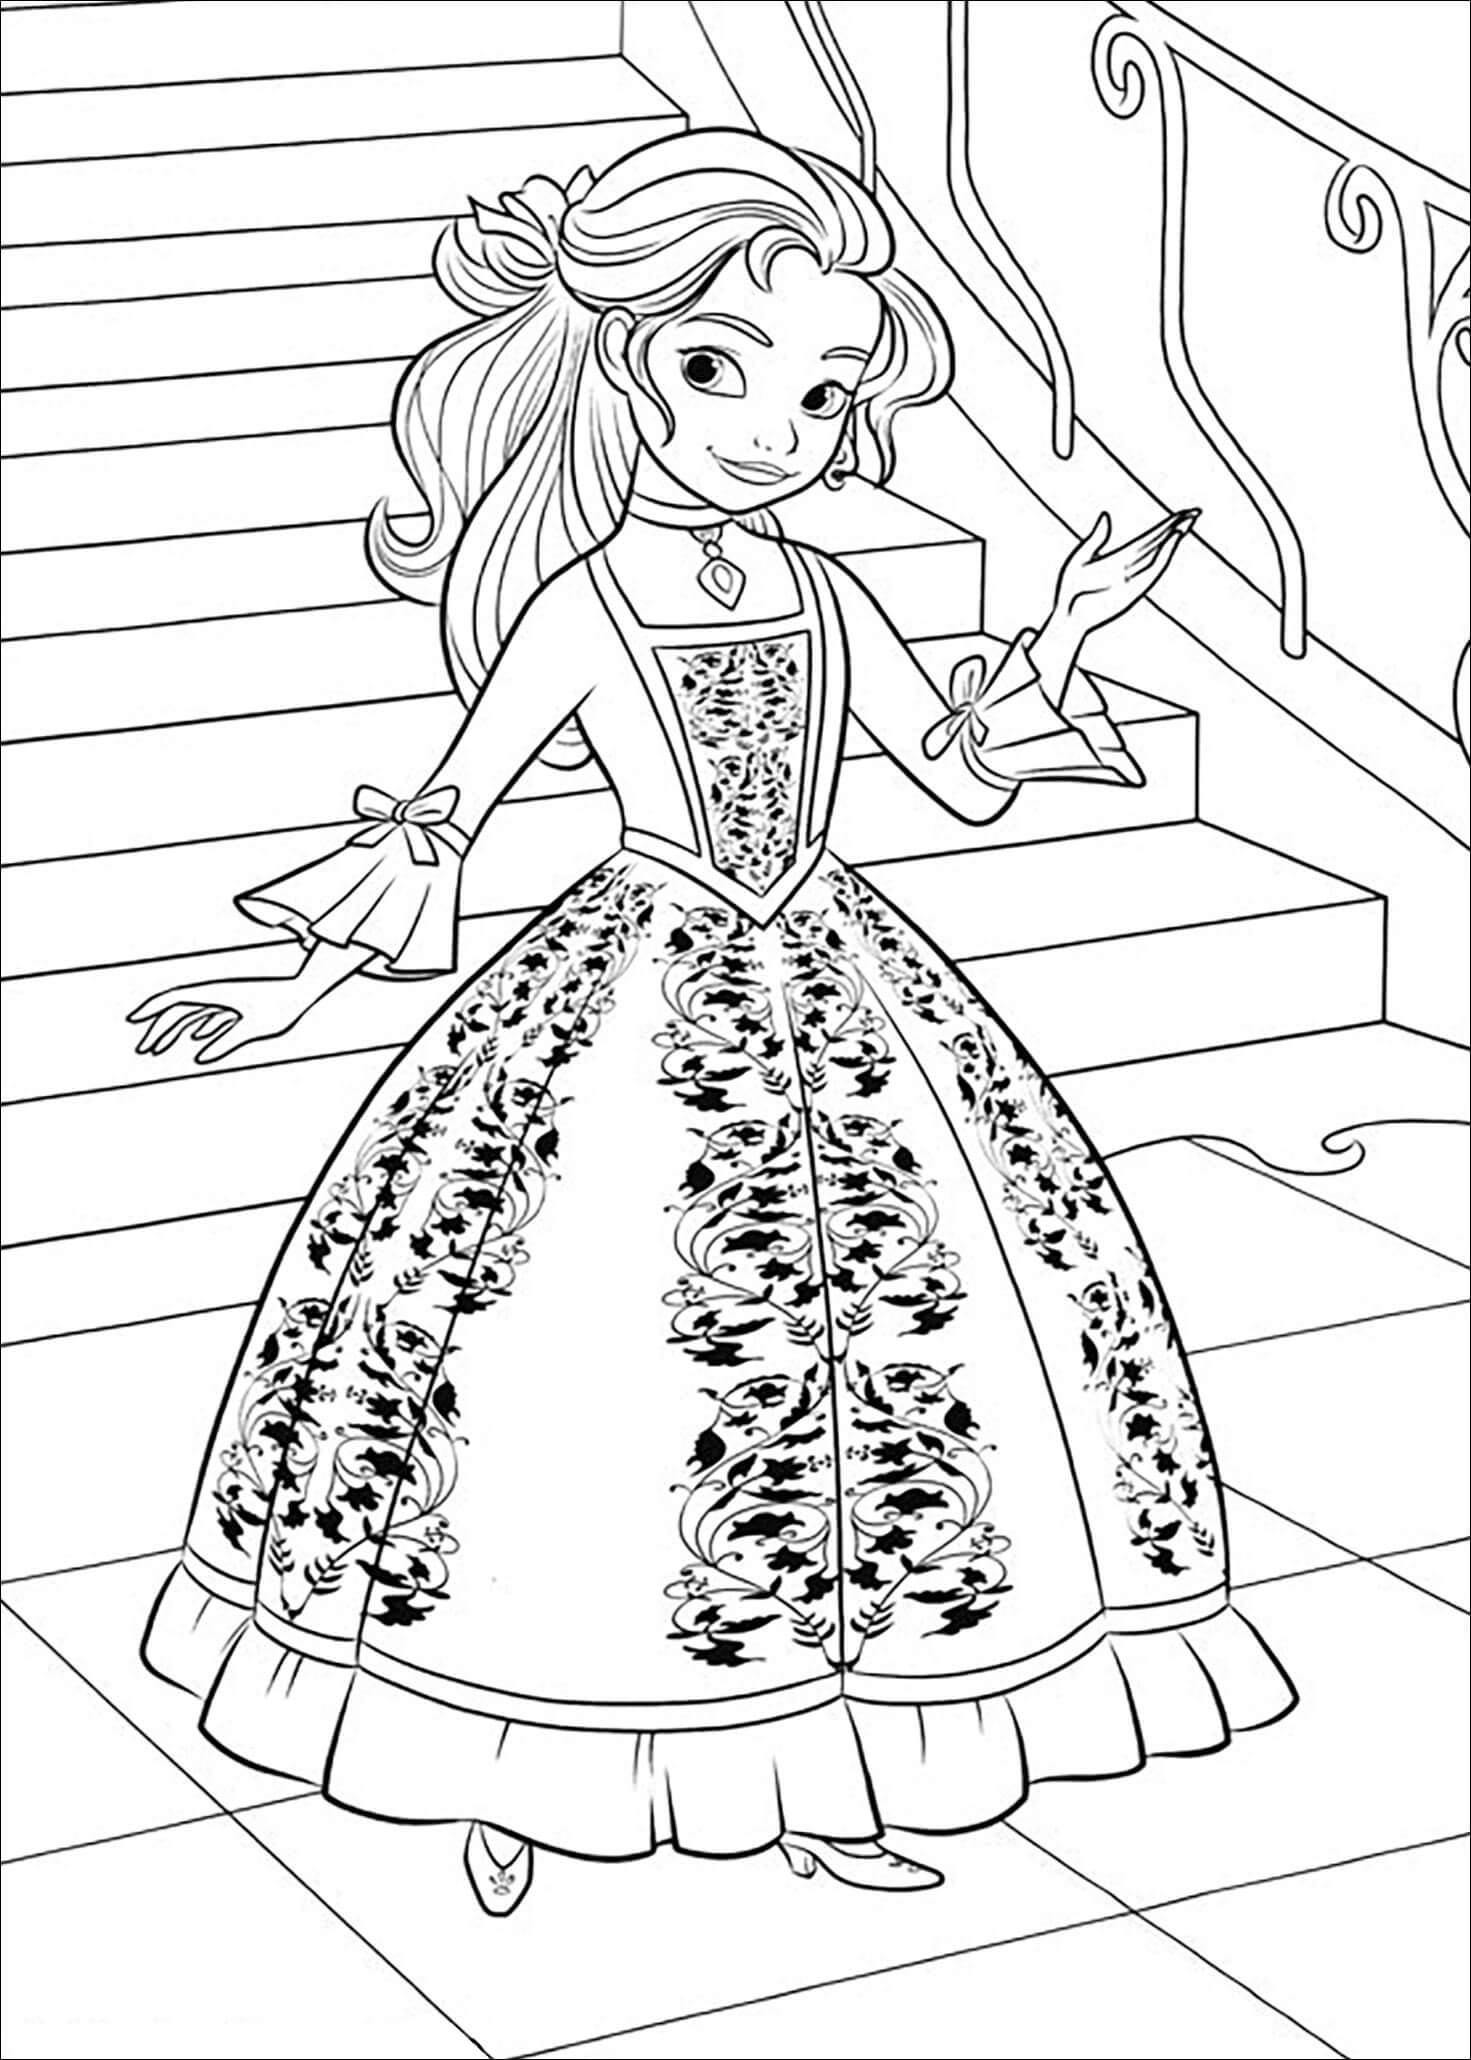 Dibujos de Impresionante Princesa Elena para colorear